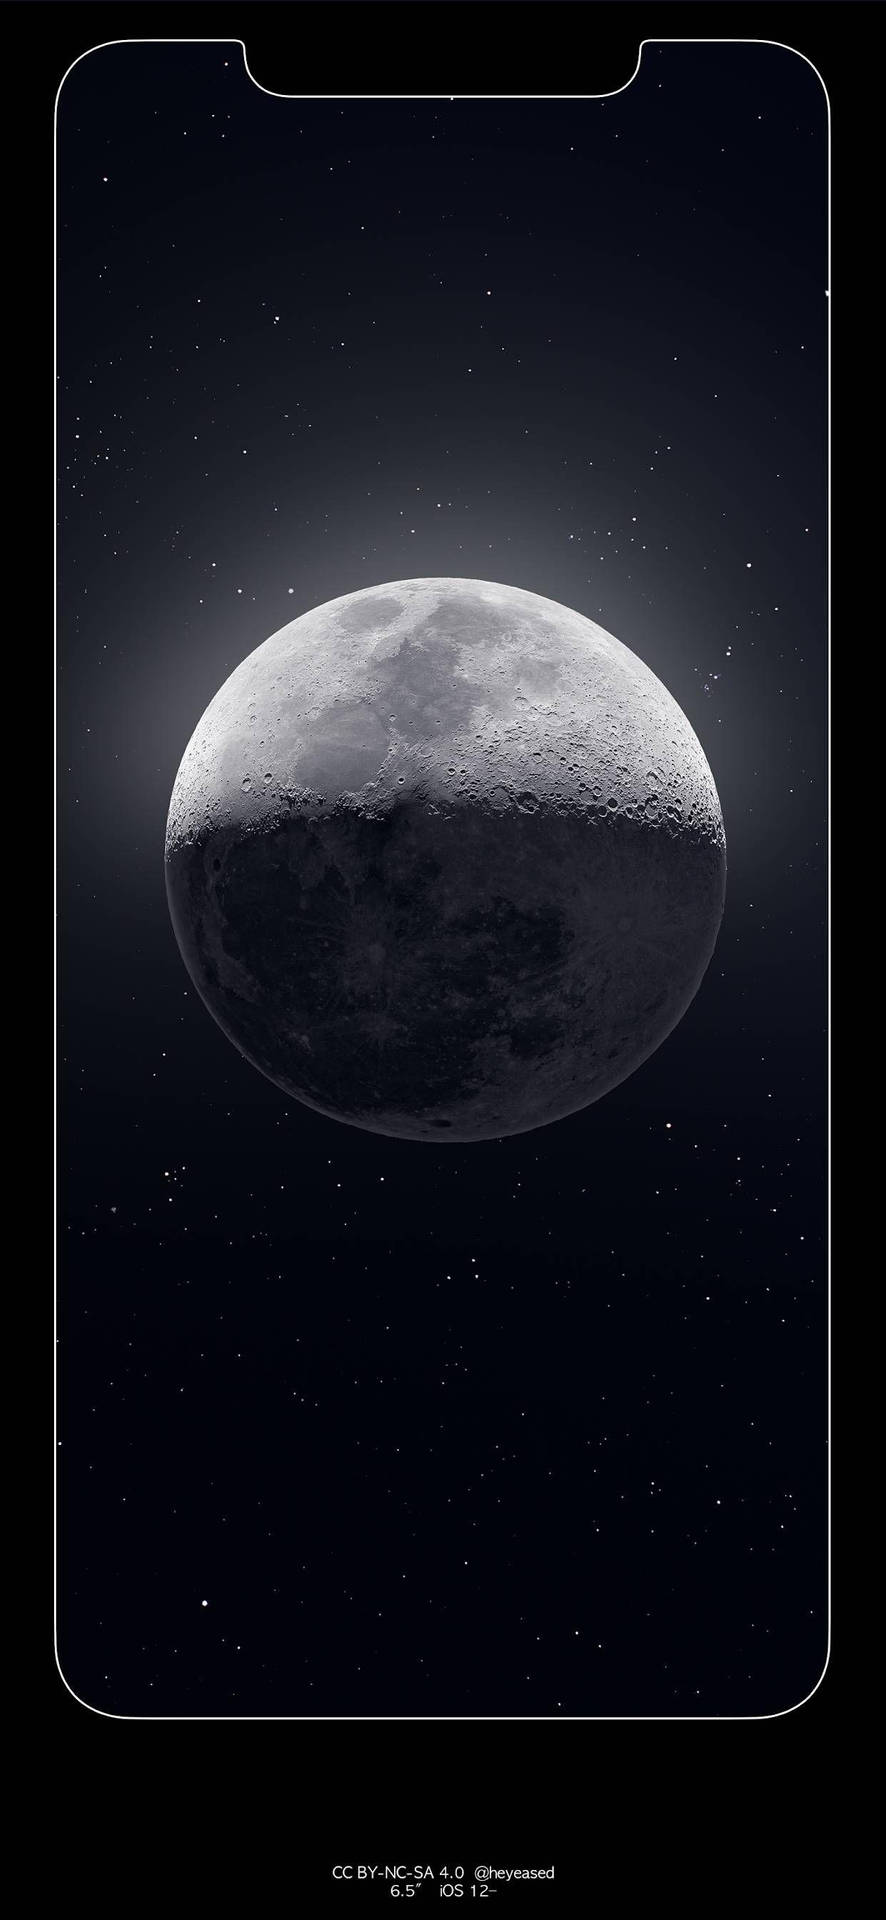 Laluna Se Muestra En El Fondo De Un Iphone. Fondo de pantalla